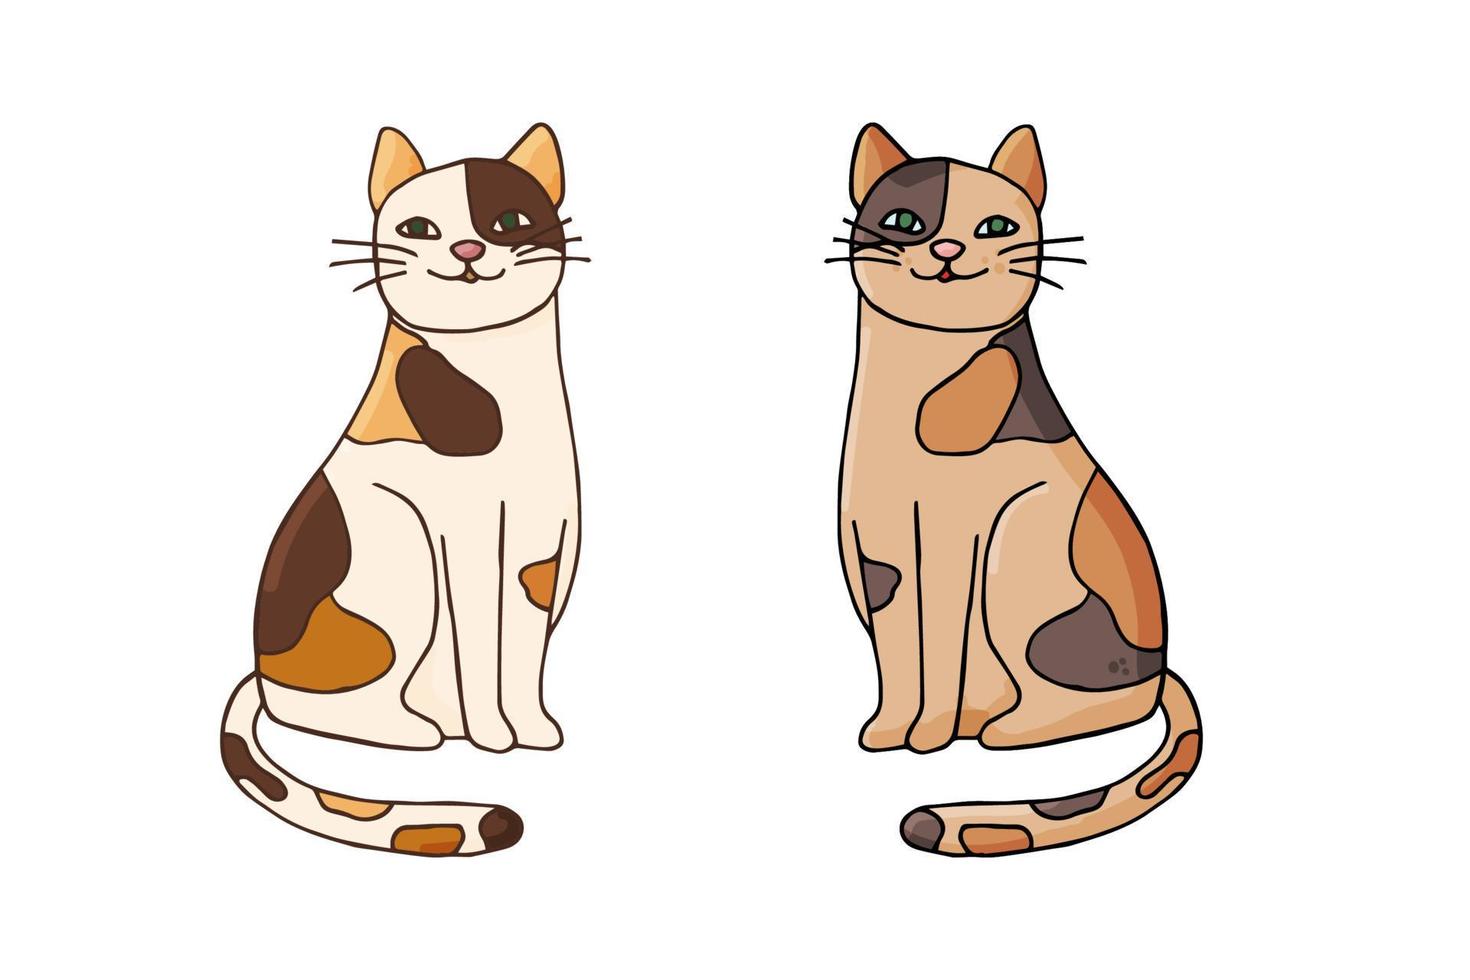 conjunto de icono de lindos gatos manchados. Ilustración de vector dibujado a mano en estilo doodle aislado sobre fondo blanco.